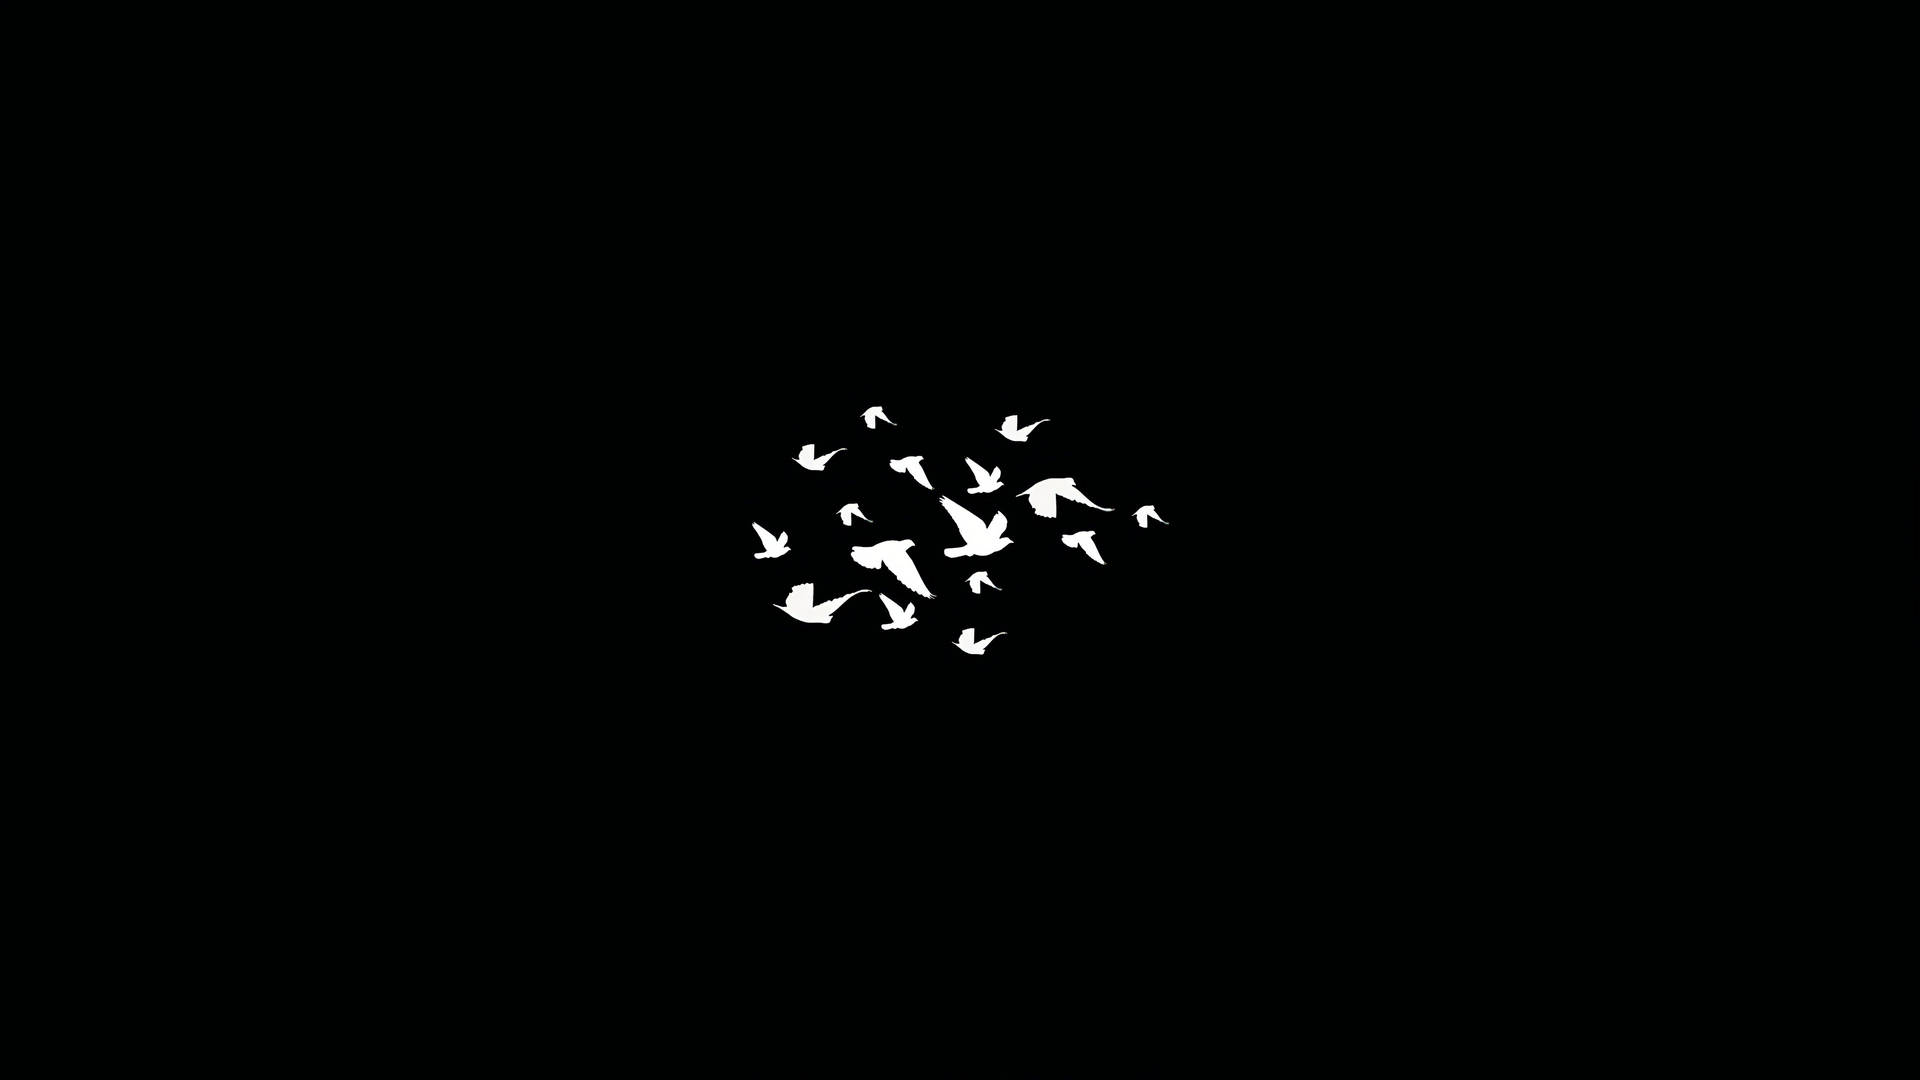 Dark Minimalist Flock Of Birds Background